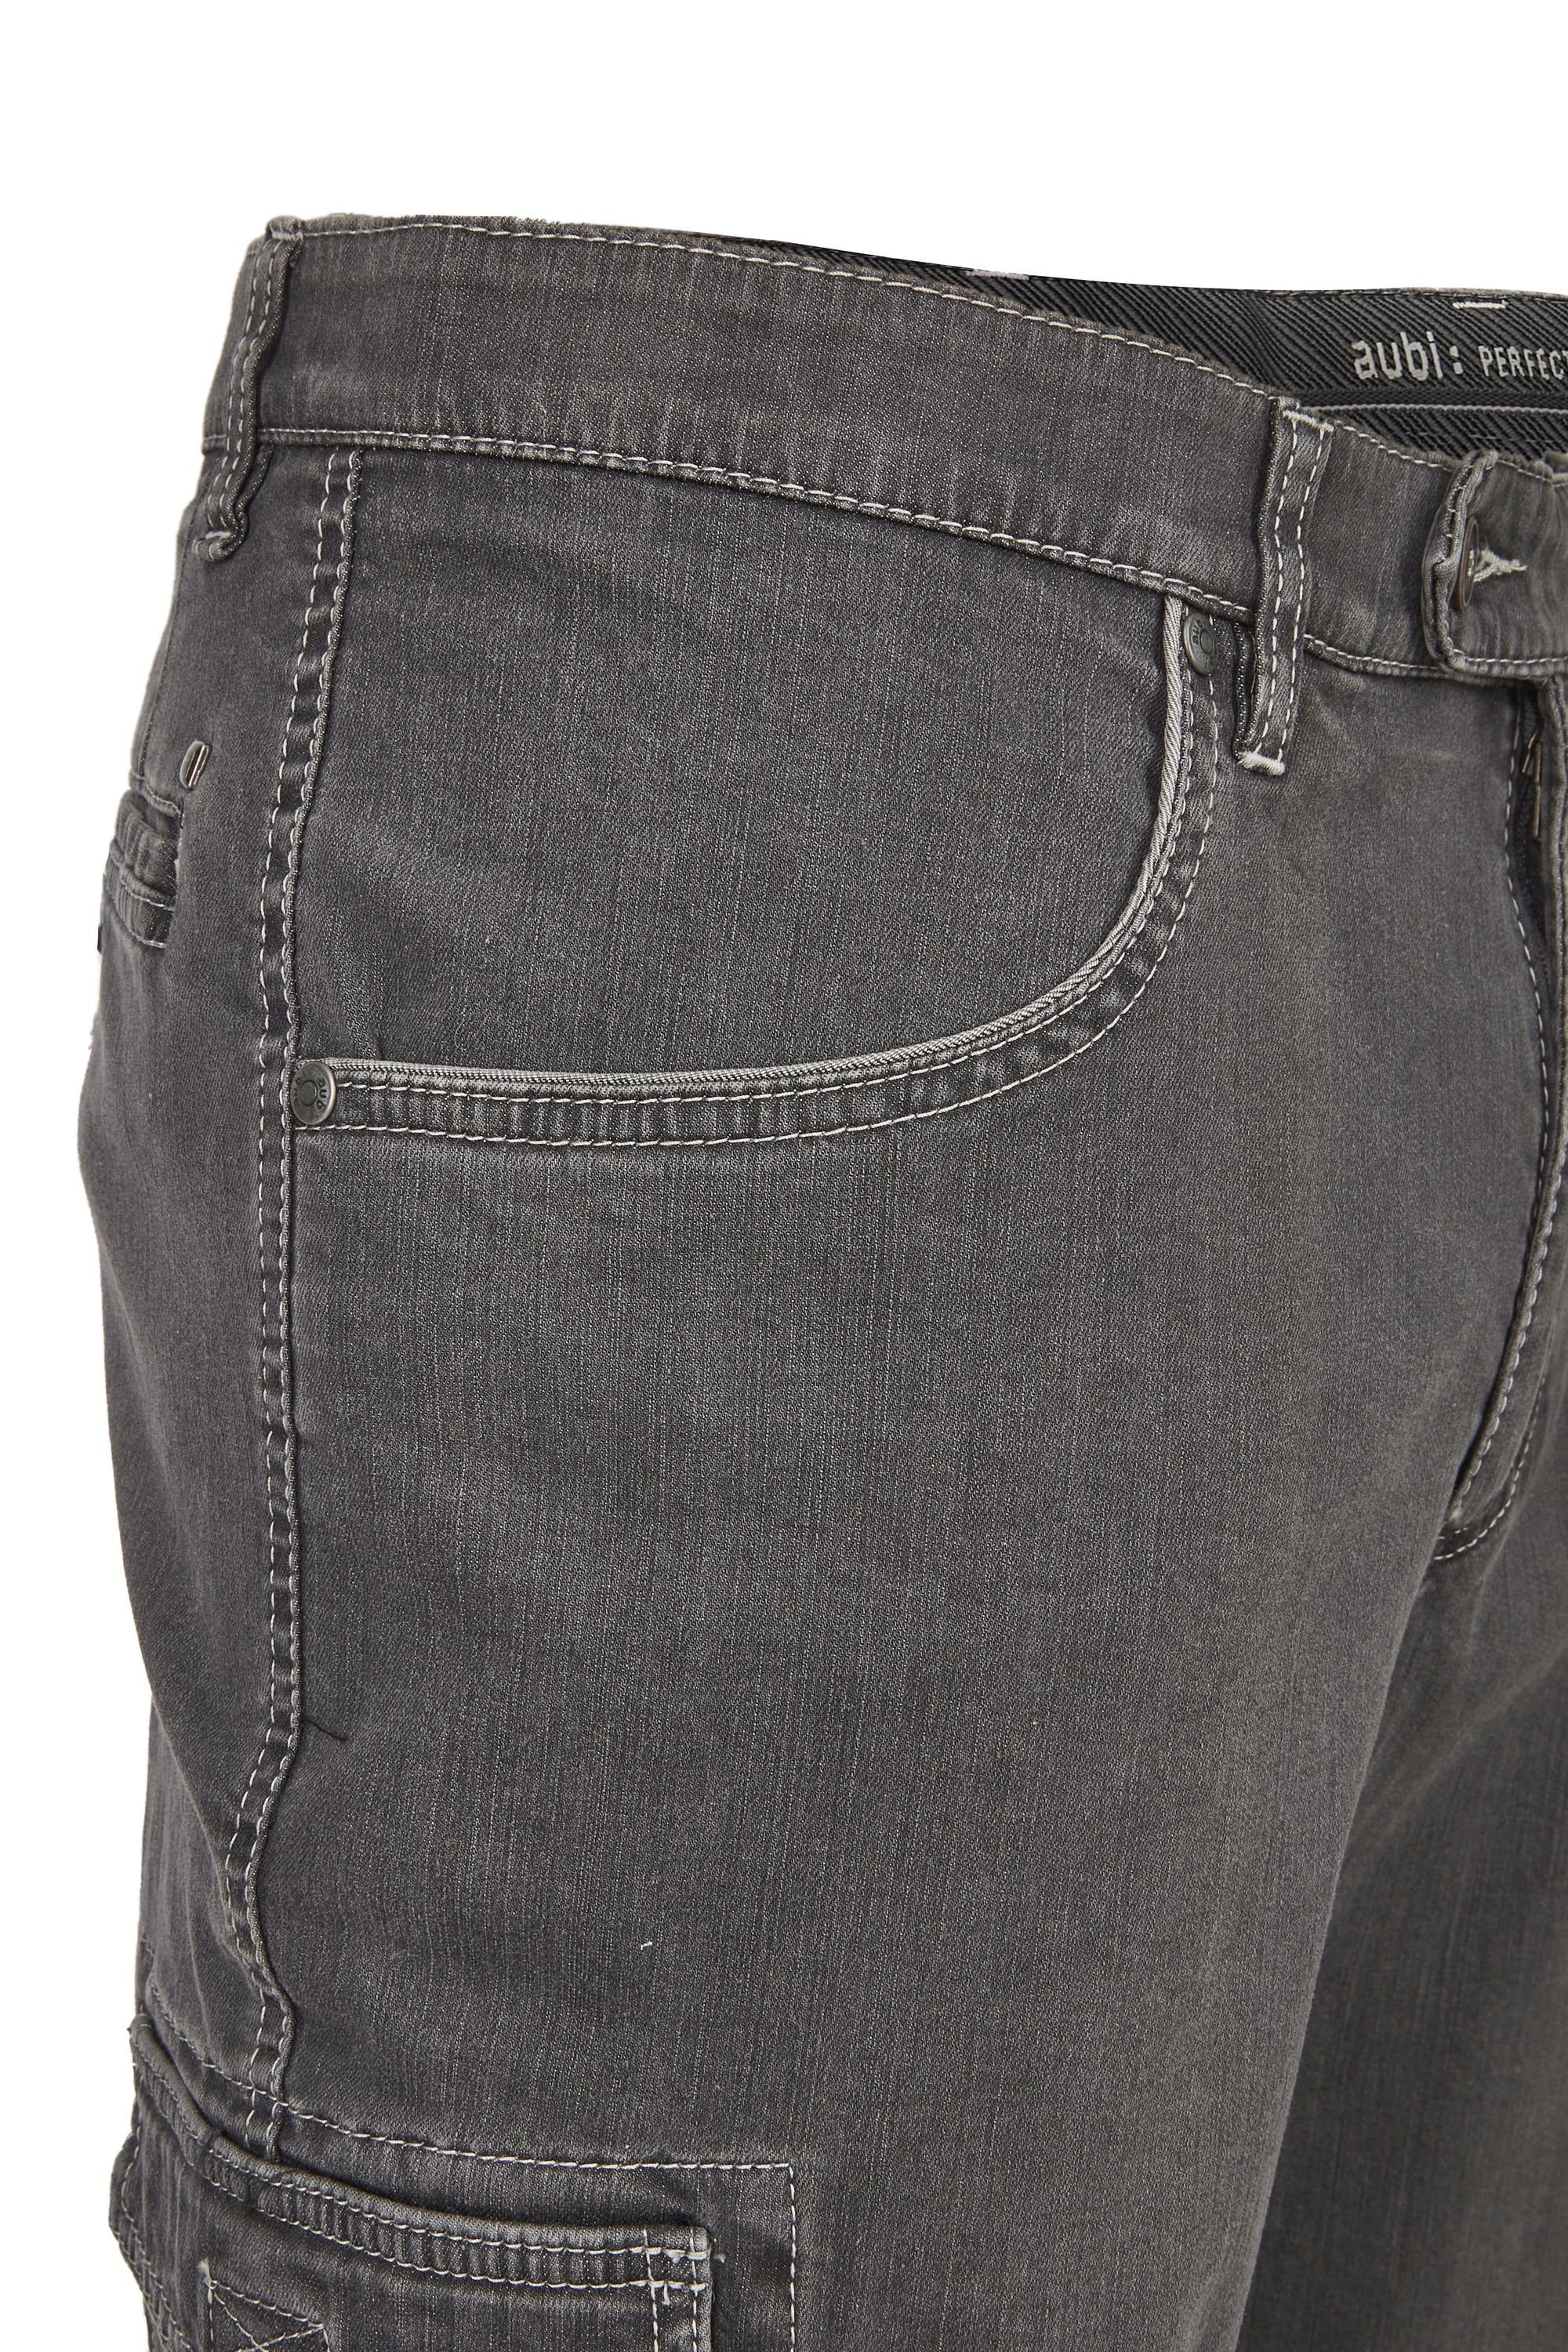 aubi 616 Herren Flex grey Shorts Stretch High Fit (54) Modell Baumwolle Bequeme Jeans Jeans Sommer aus Cargo Perfect aubi: